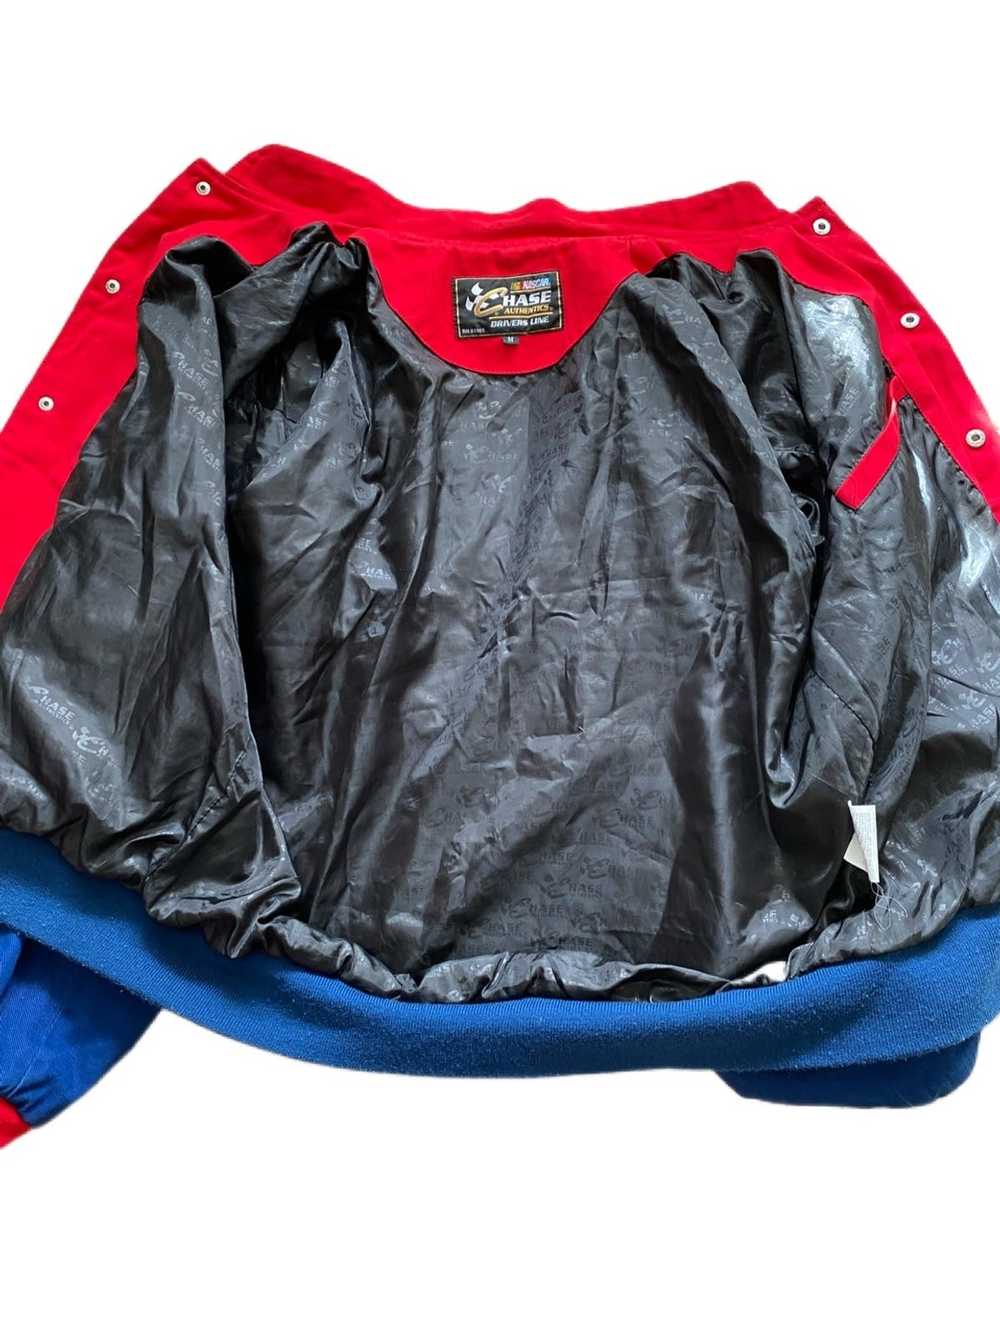 Chase Authentics Vintage Jeff Gordon jacket - image 3